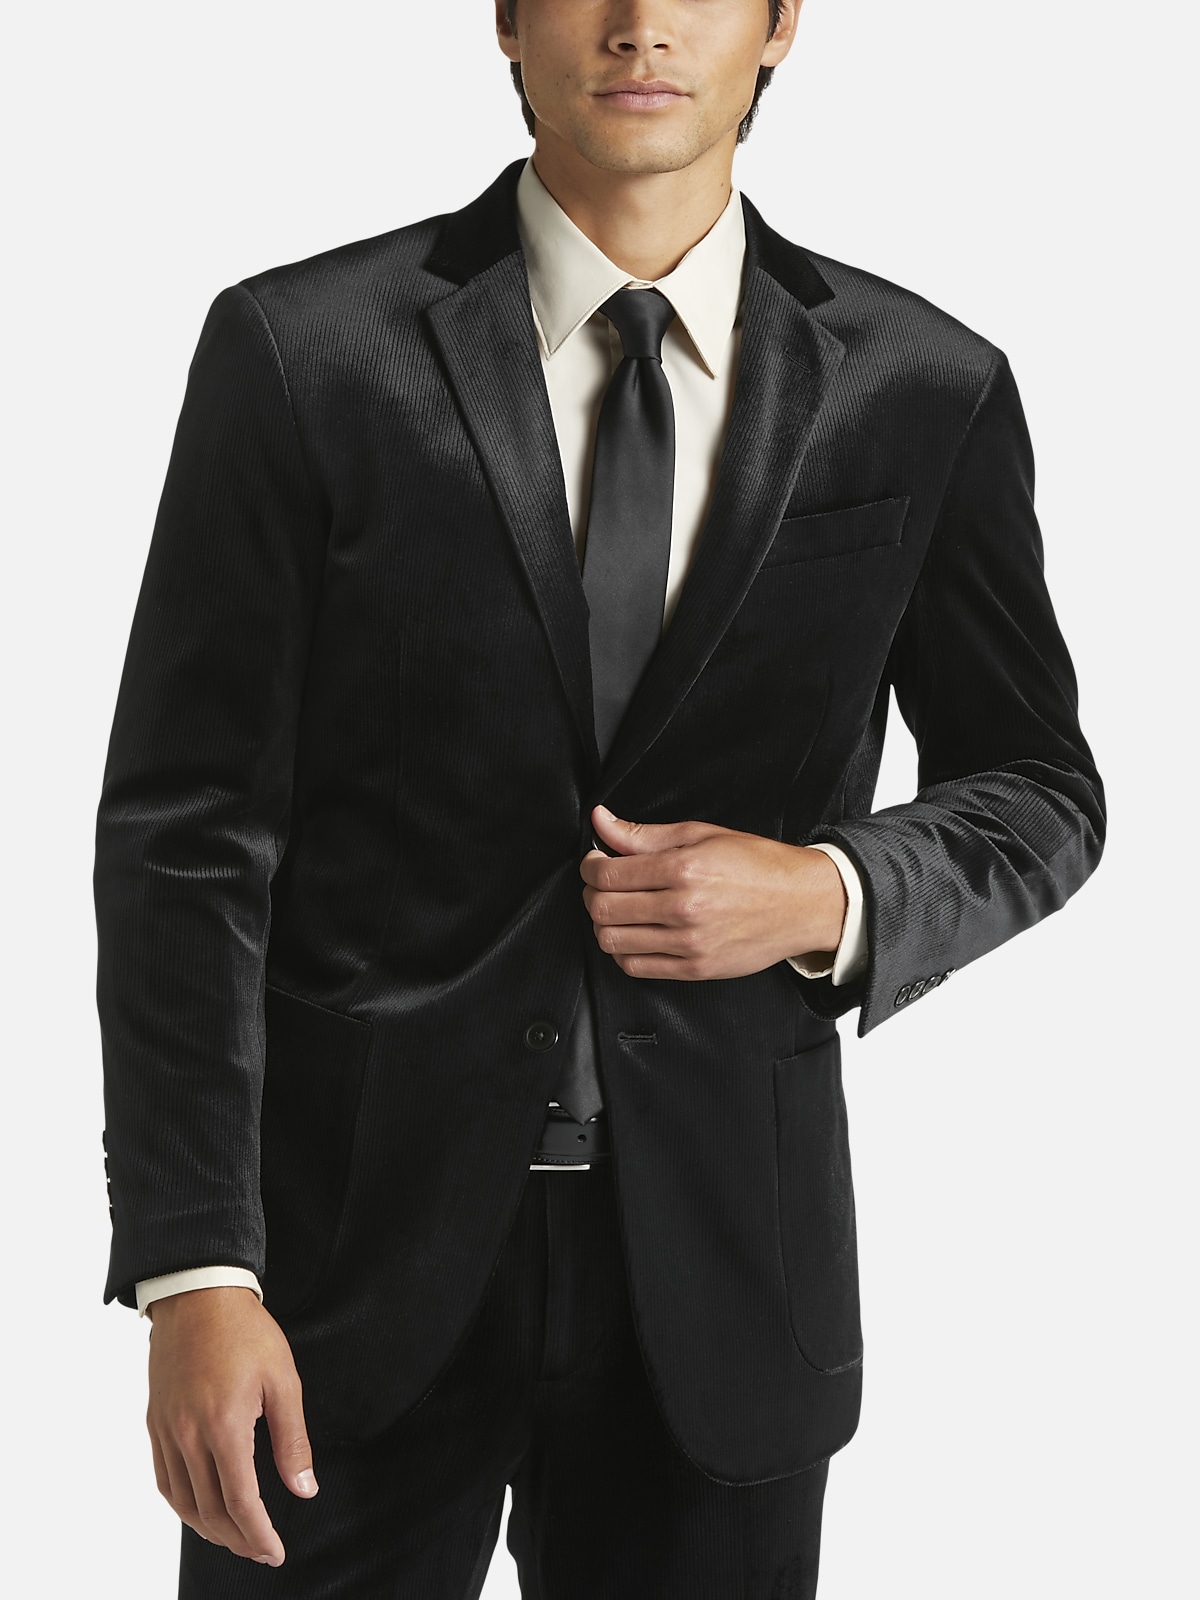 Egara Skinny Fit Suit Separates Corduroy Jacket | All Sale| Men's